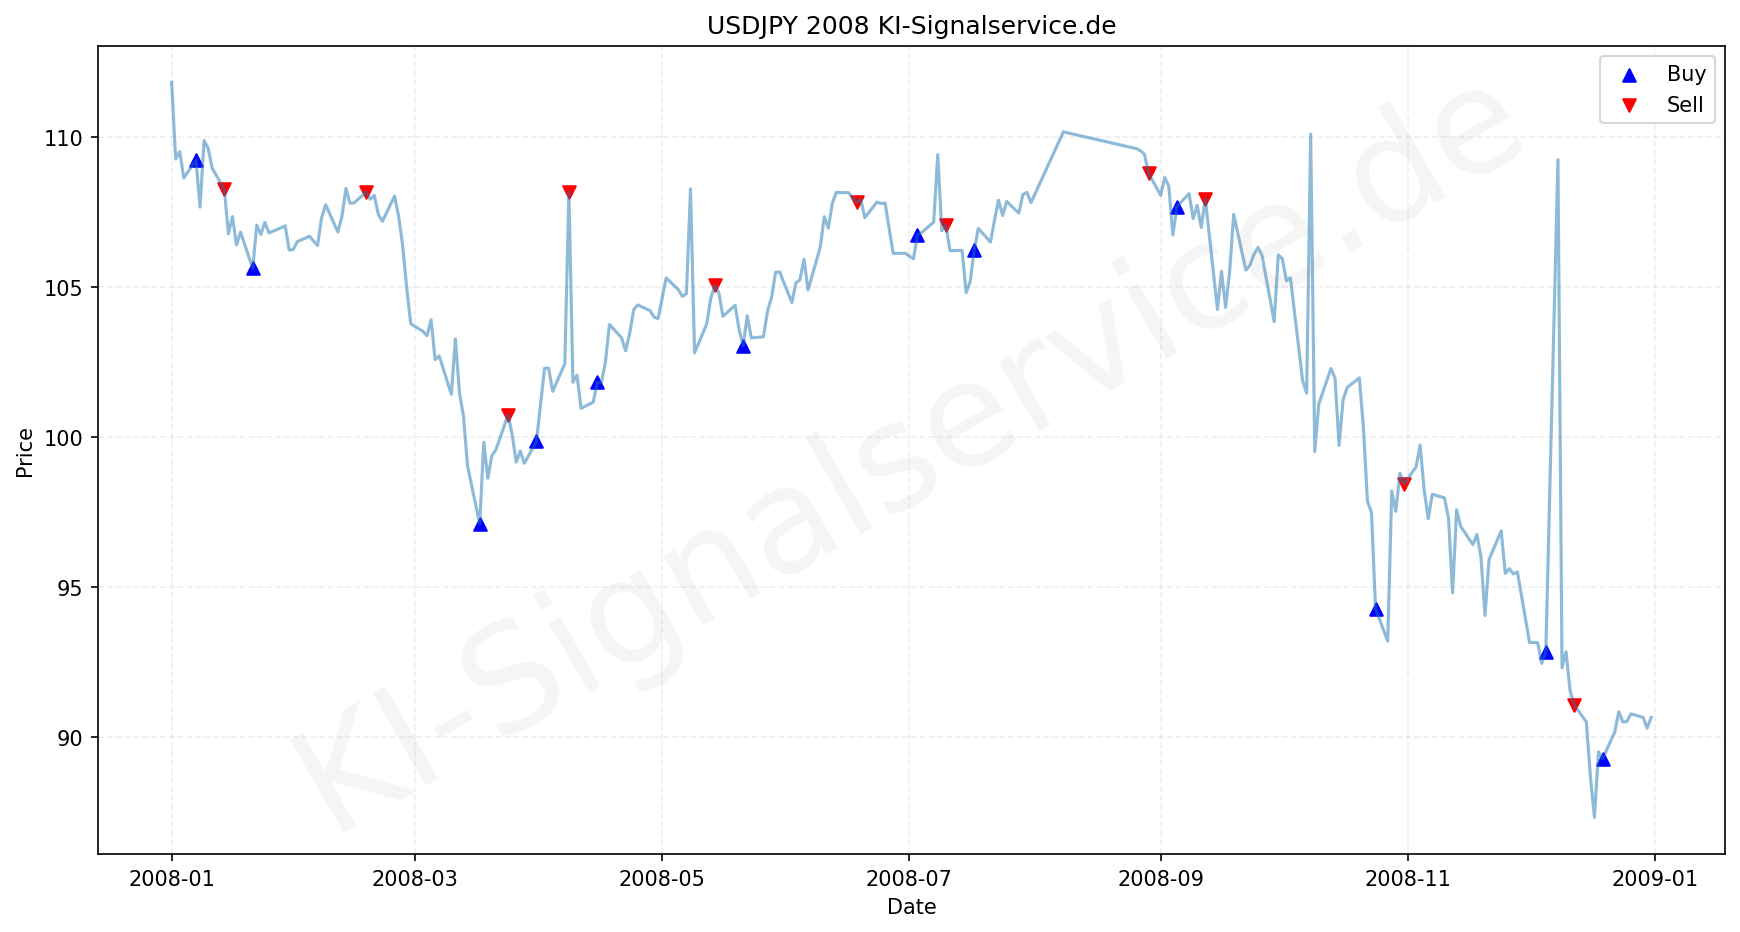 USDJPY Chart - KI Tradingsignale 2008